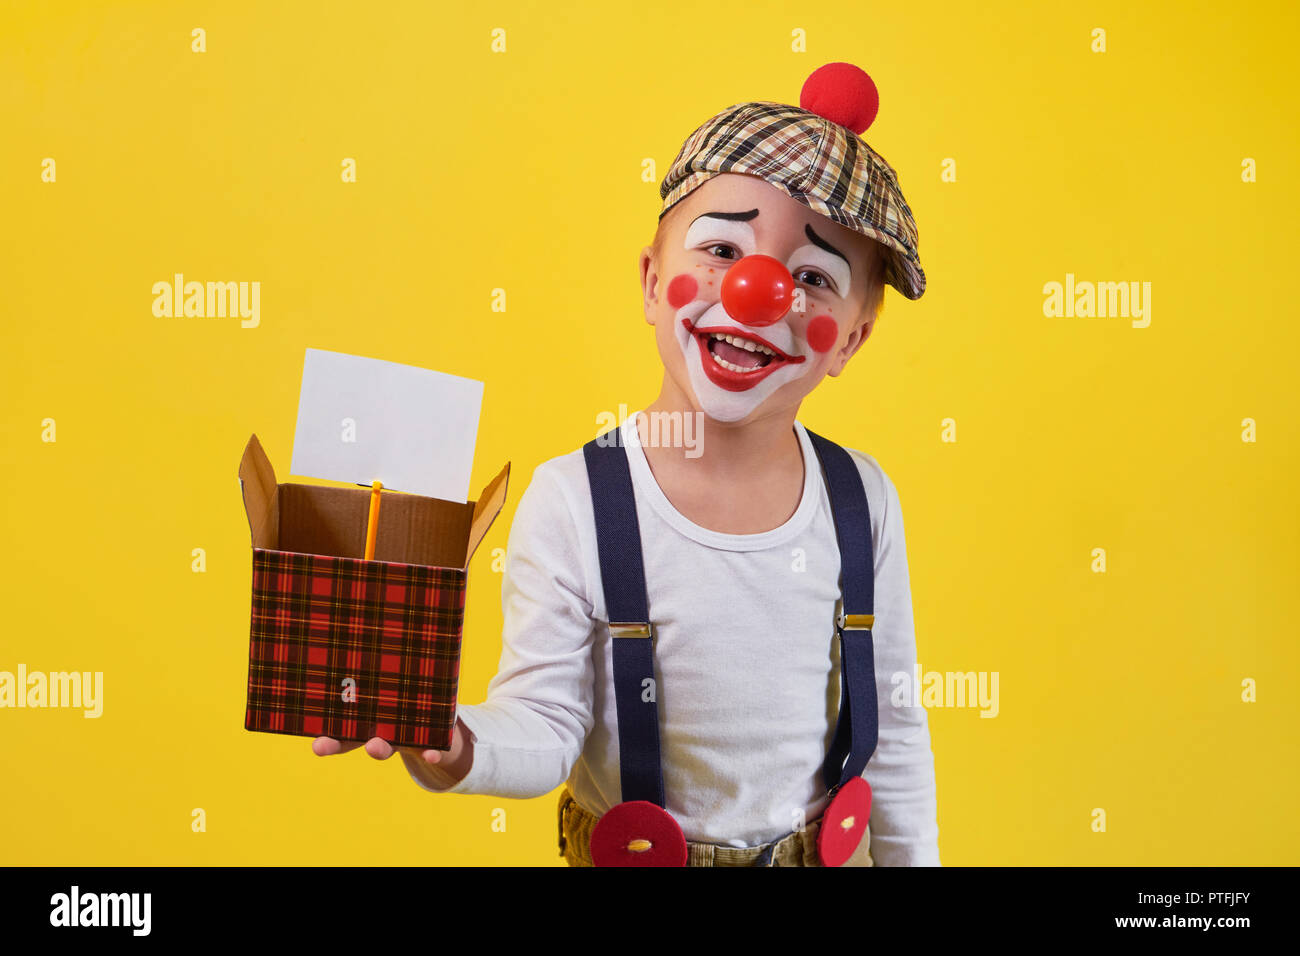 Funny kid Clown auf gelbem Hintergrund. Schönen verspielten portrait Kind Junge Narren in Make-up. Ausdruck Gesicht Freude, Lächeln, Spaß, fröhlich. 1 April Fool's Day Konzept. Stockfoto